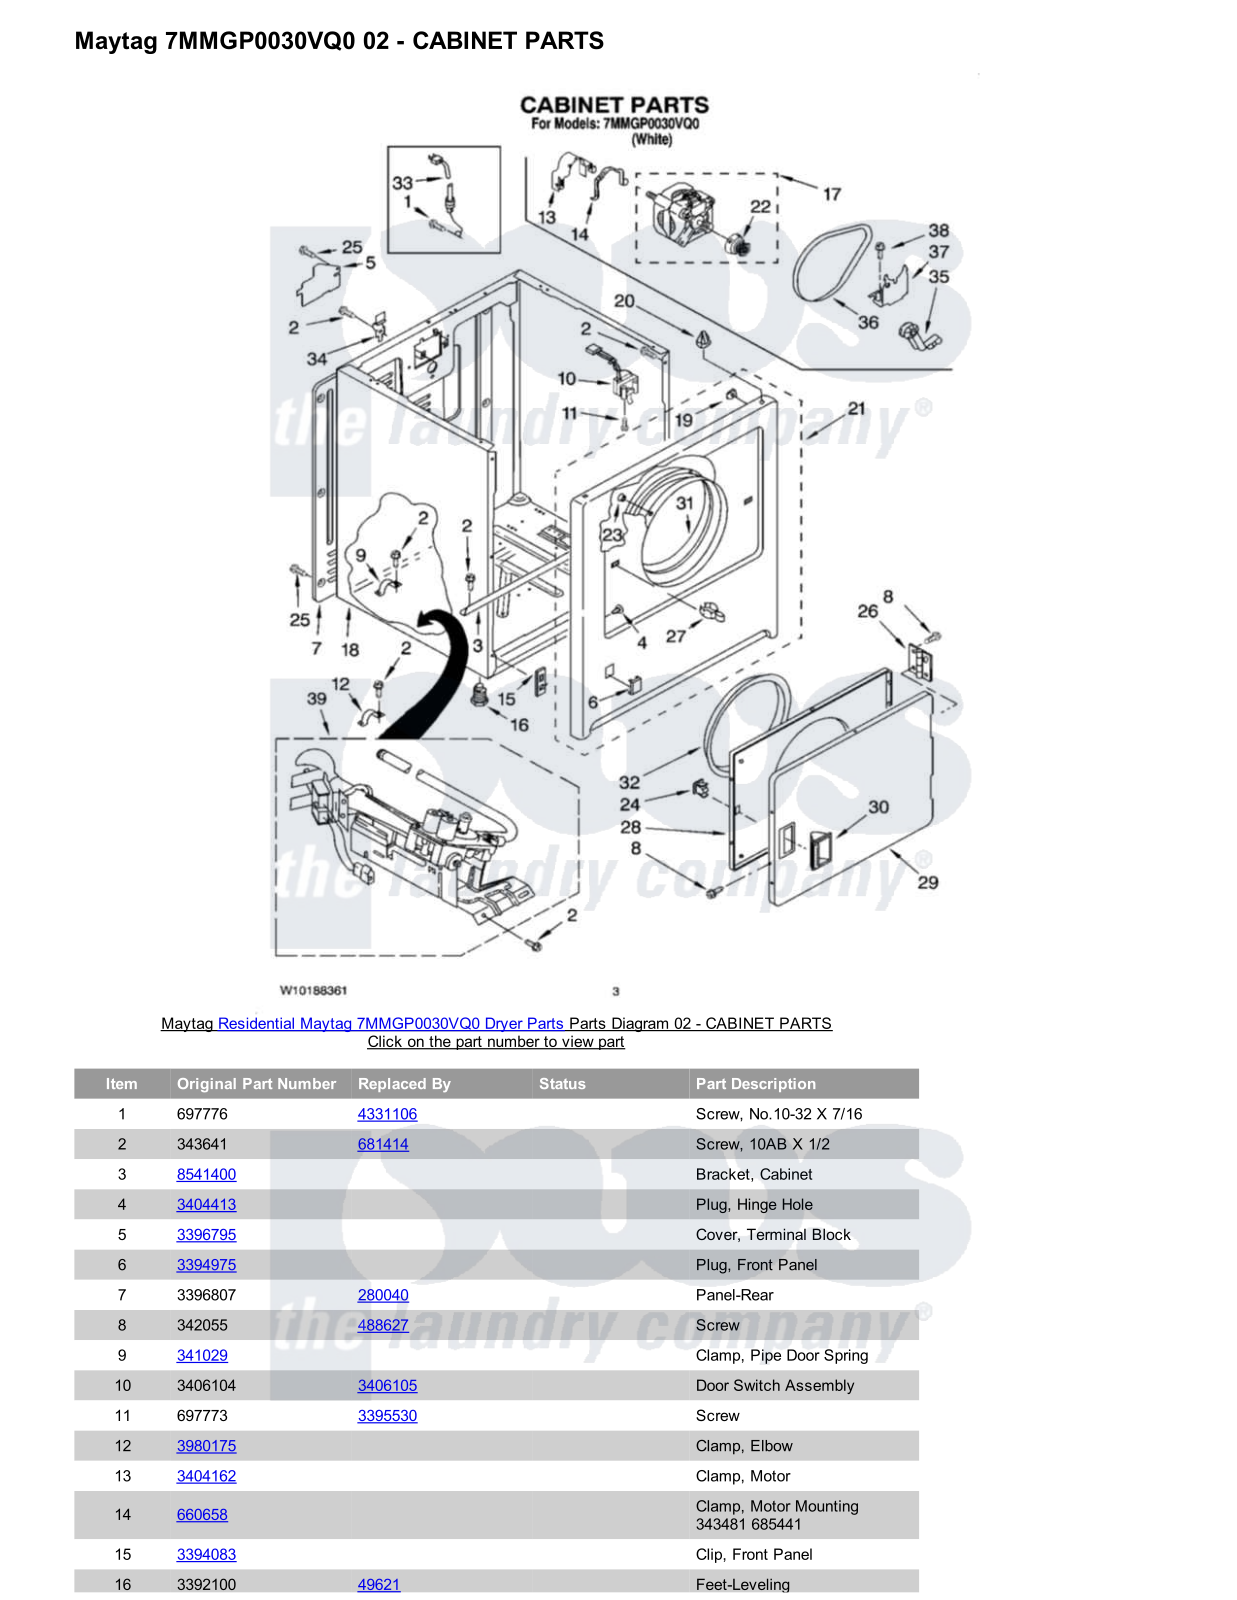 Maytag 7MMGP0030VQ0 Parts Diagram